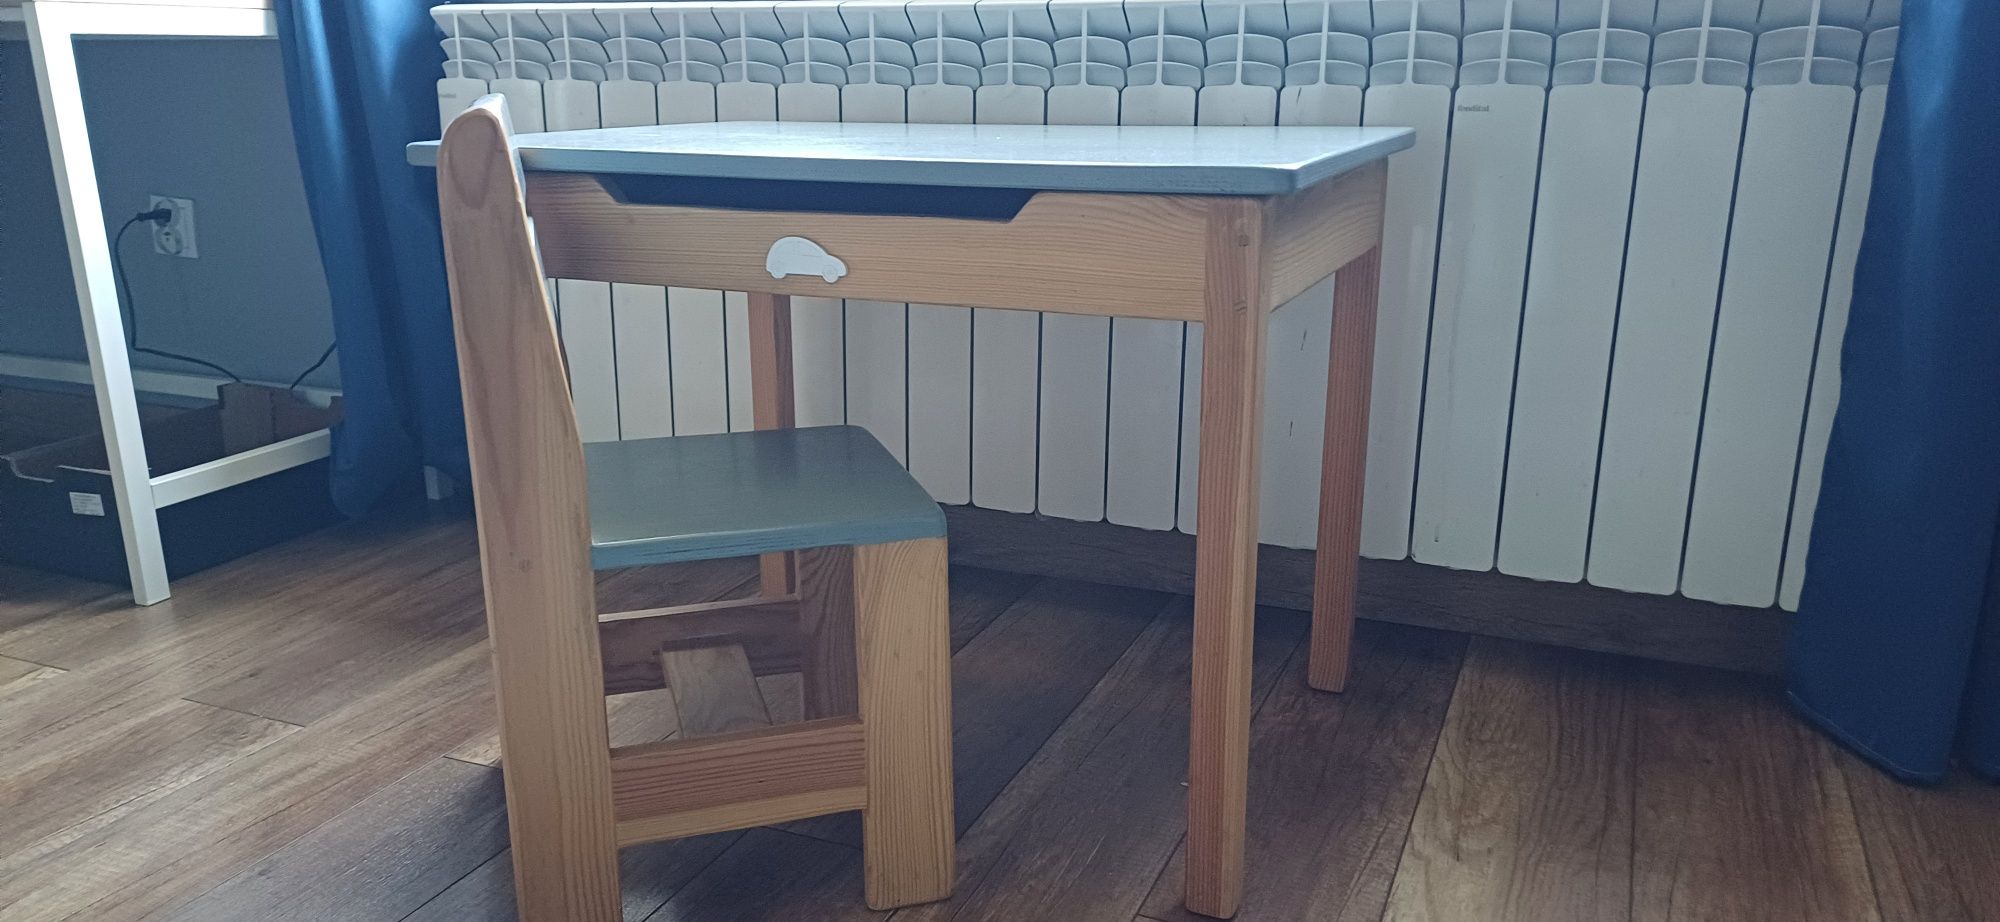 Stolik I krzesełko drewniane dla dziecka 3-7 lat Meble Grzeskowsky